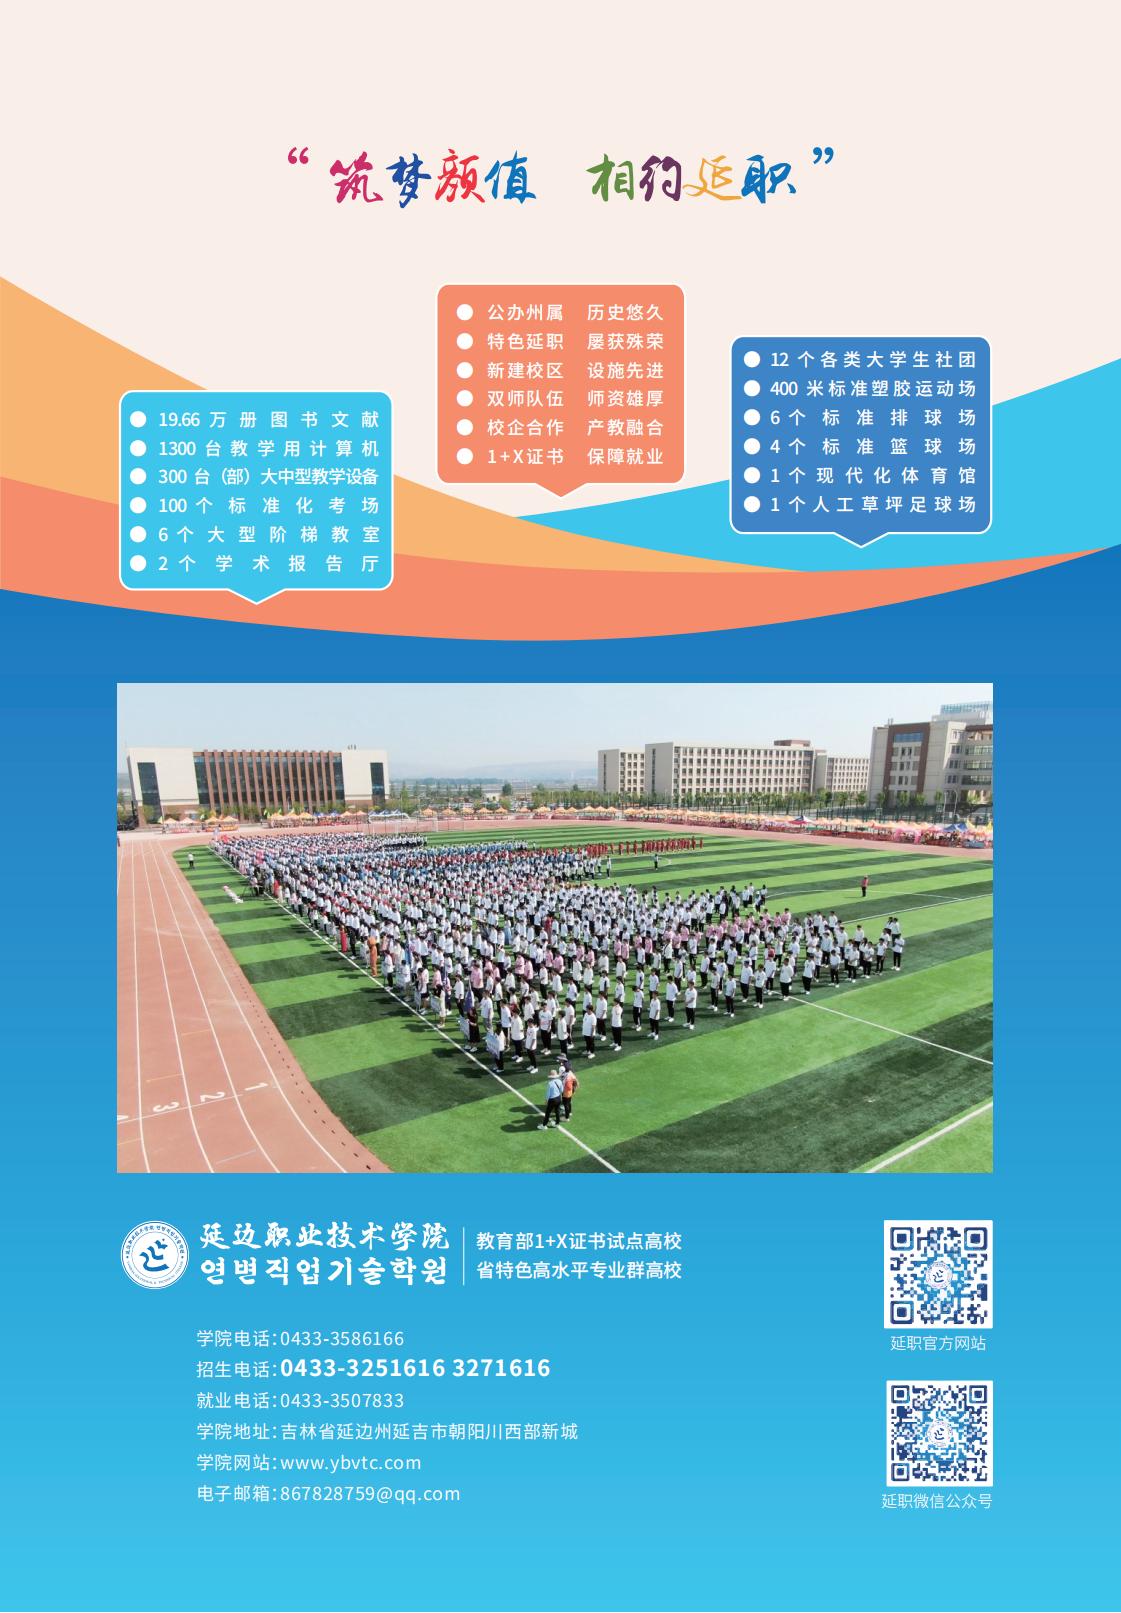 延边职业技术学院2022报考指南 预览版_15.jpg